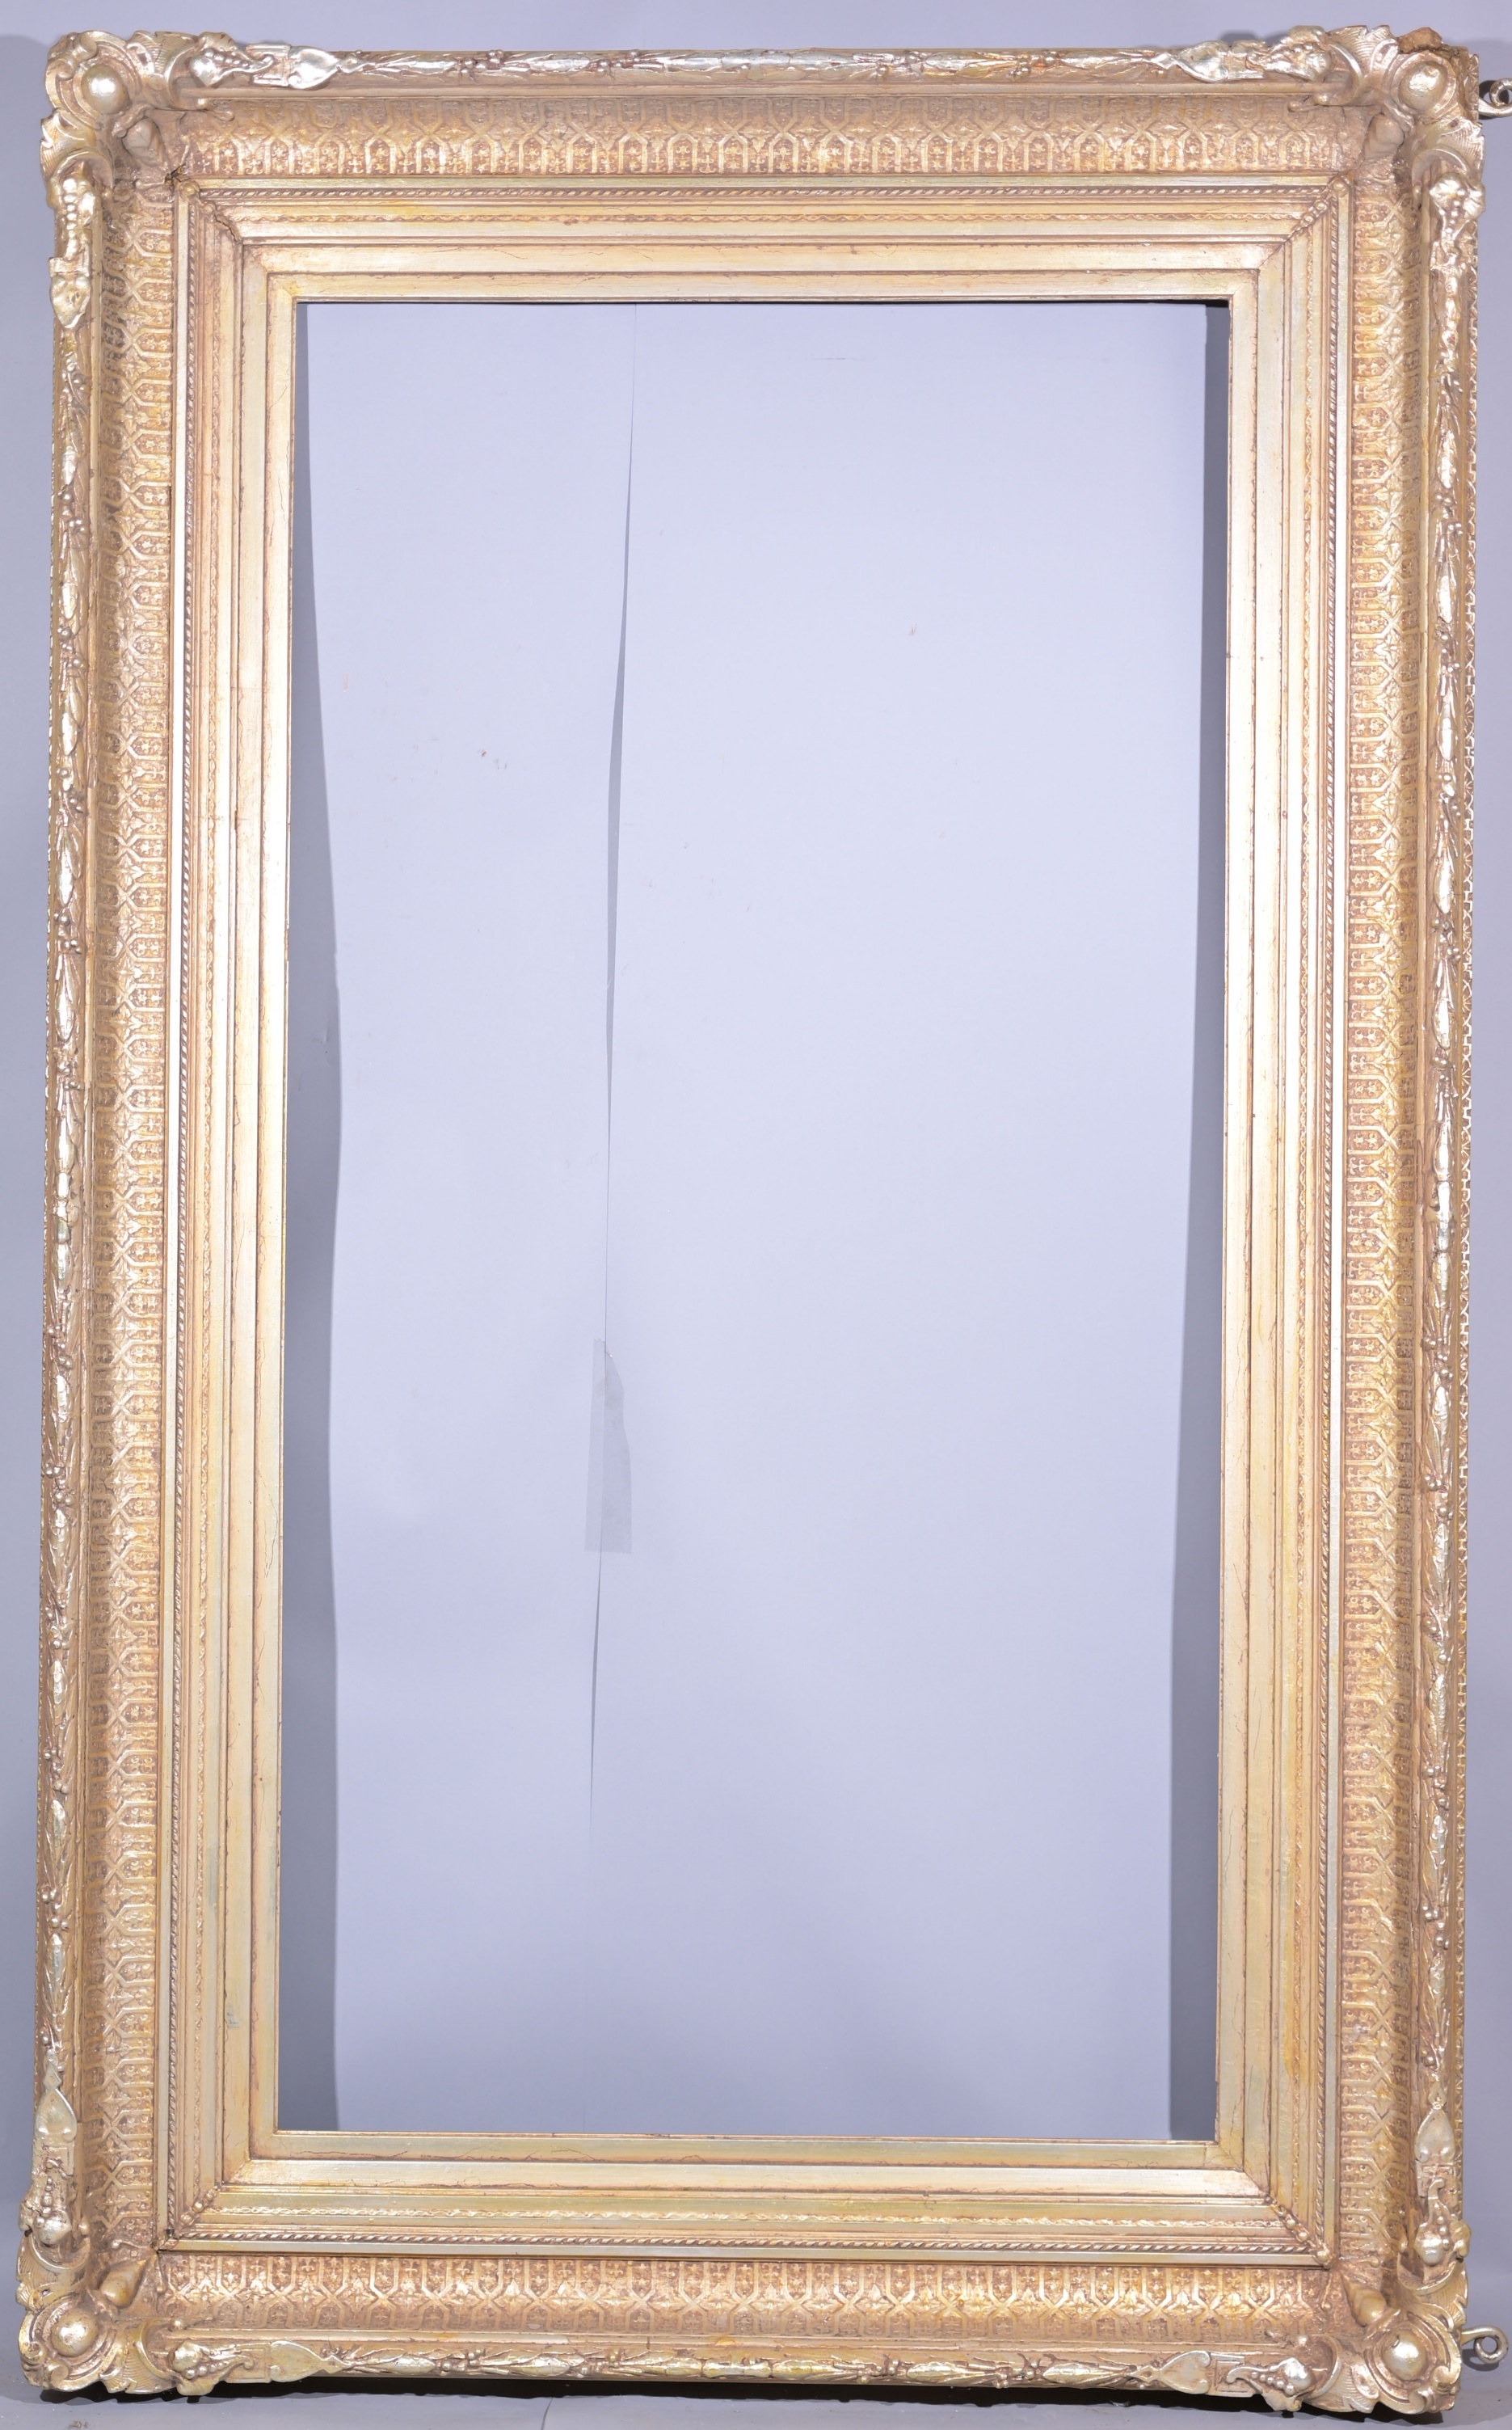 Monumental European Silver Frame - 70.25 x 36 3/8